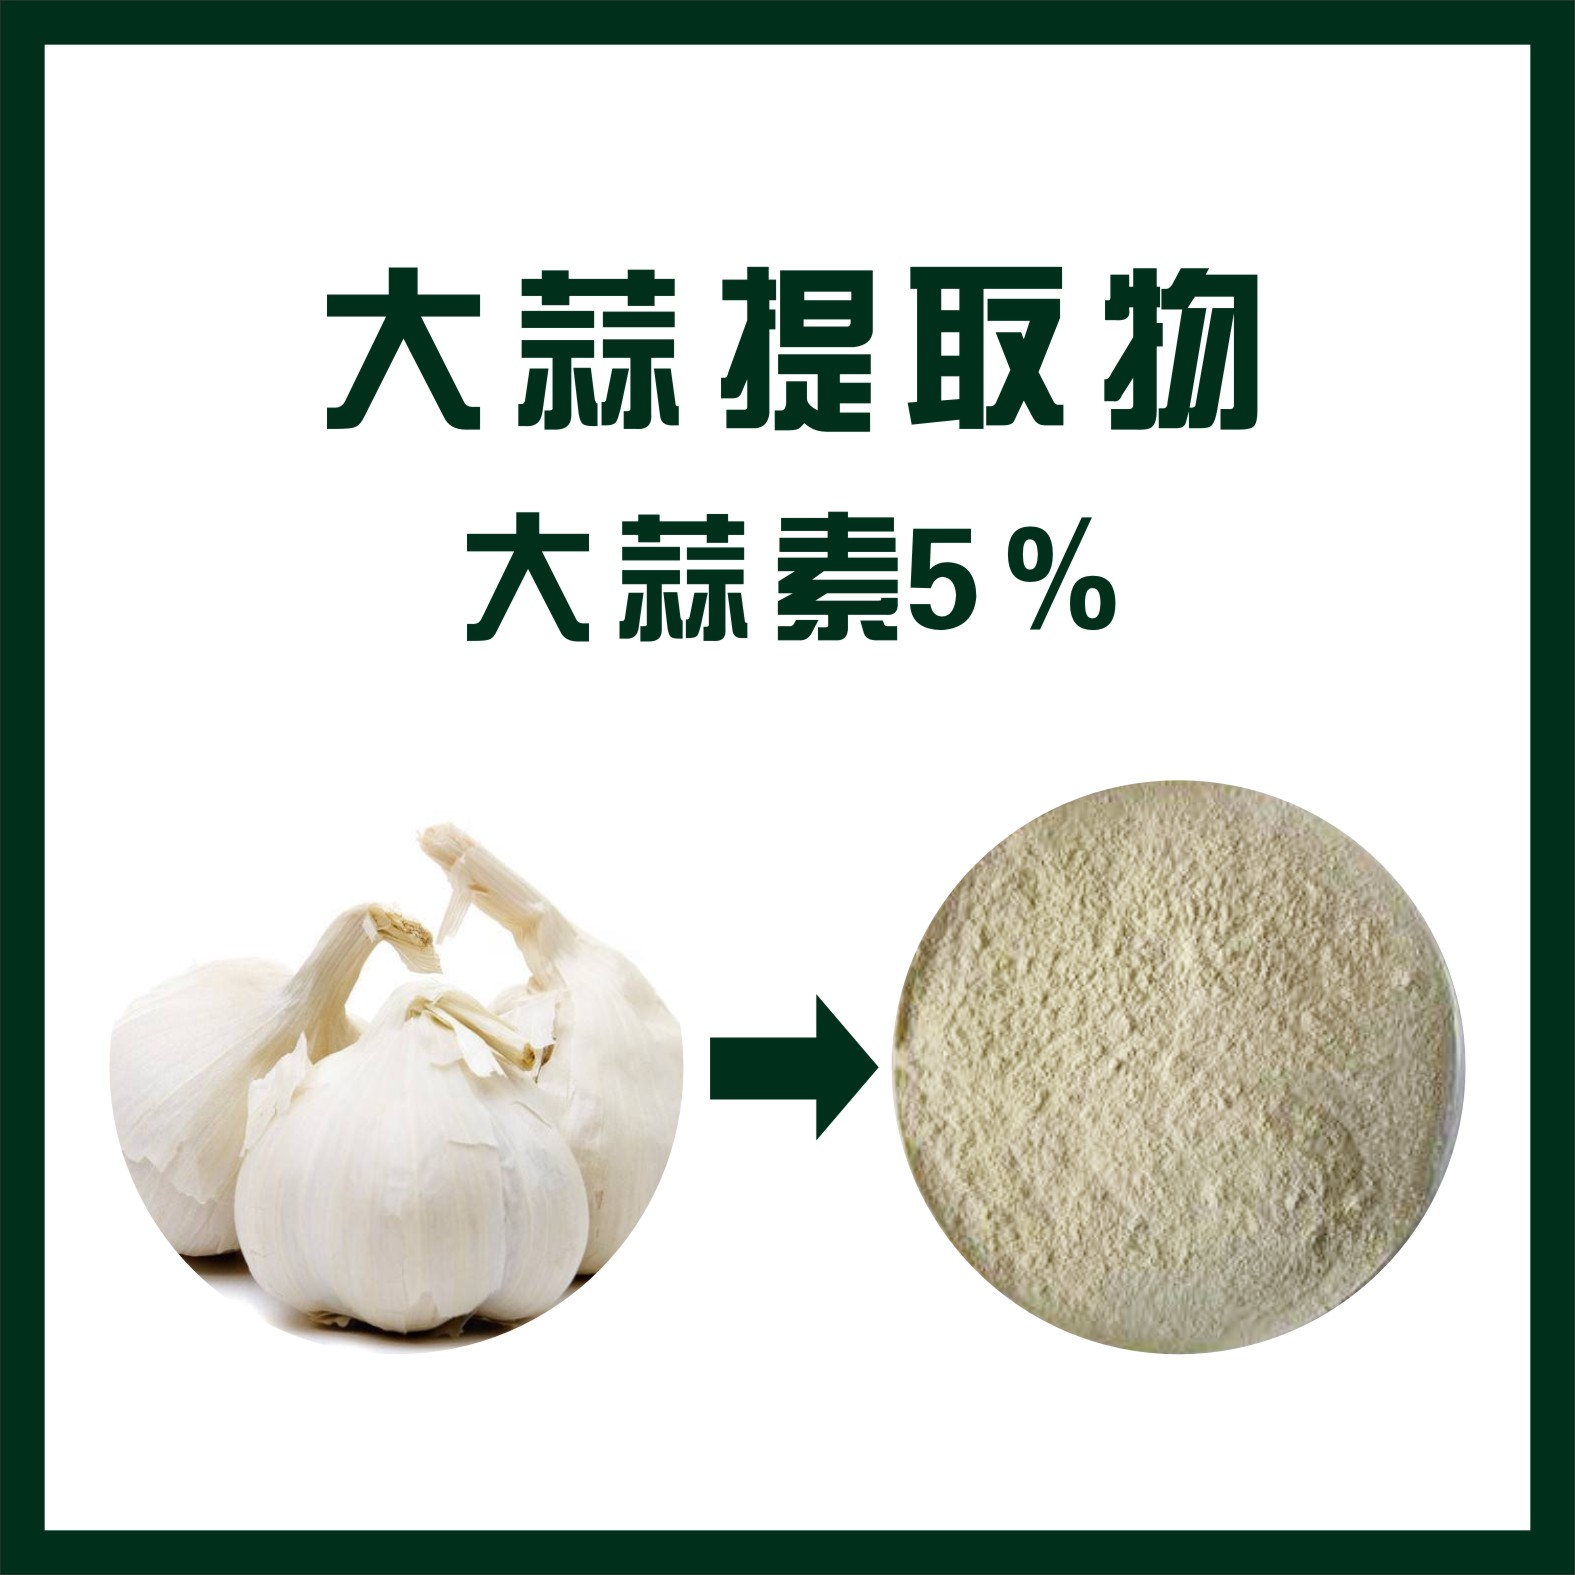 大蒜提取物,Garlic extract